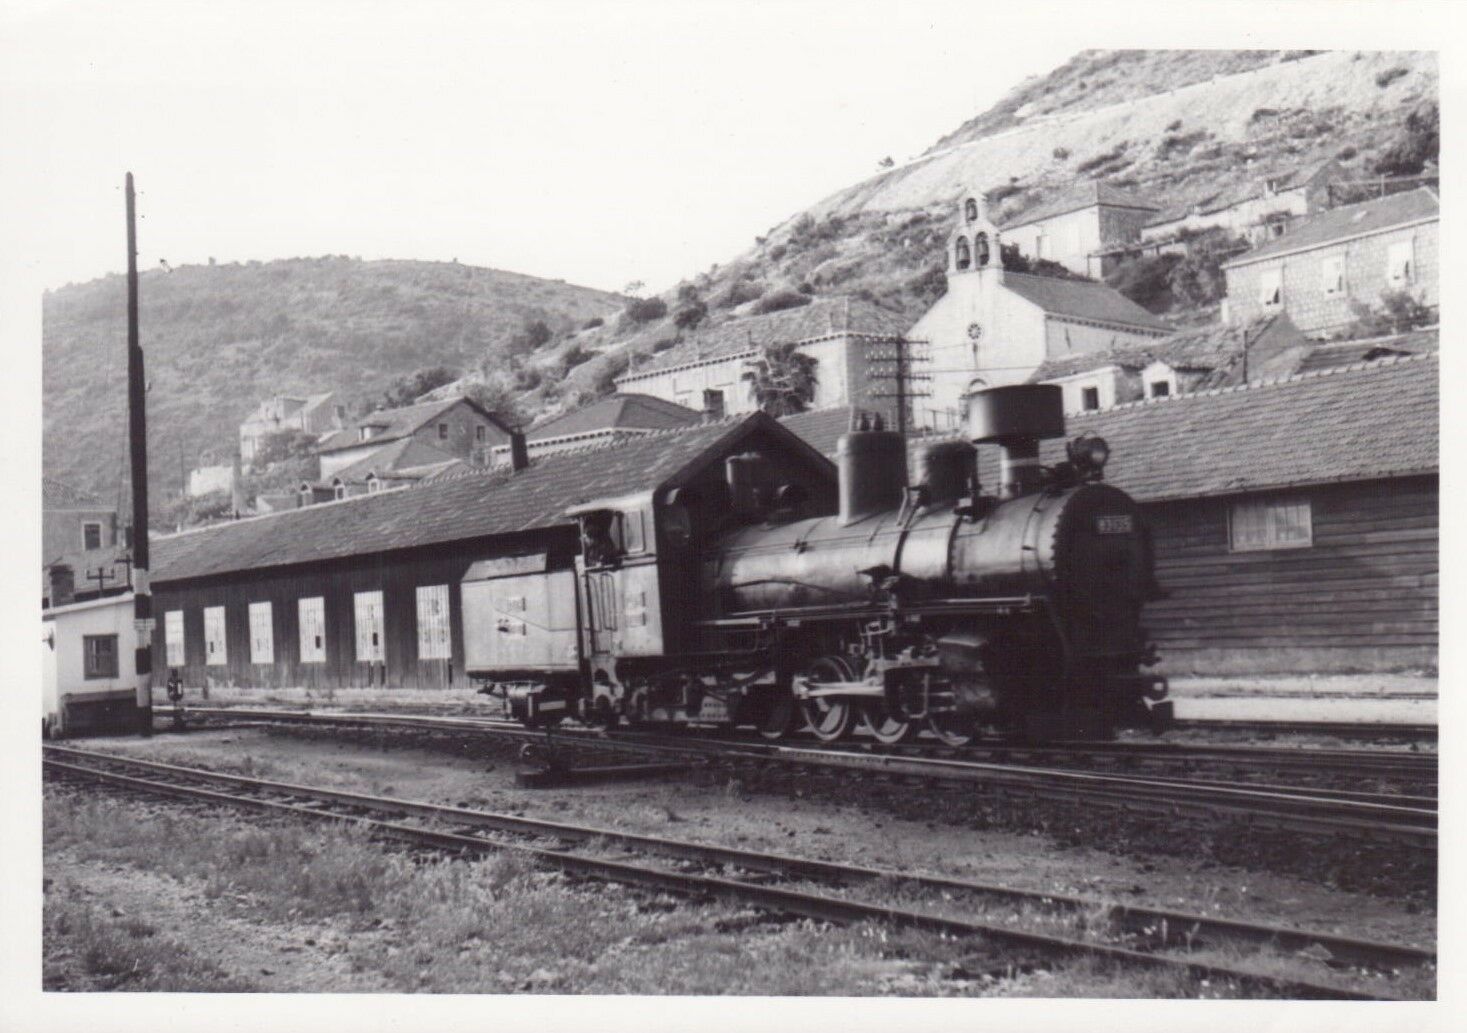 s-l1600 DU 83-151 1960s original photograph - locomotive passing buildings . france.jpg